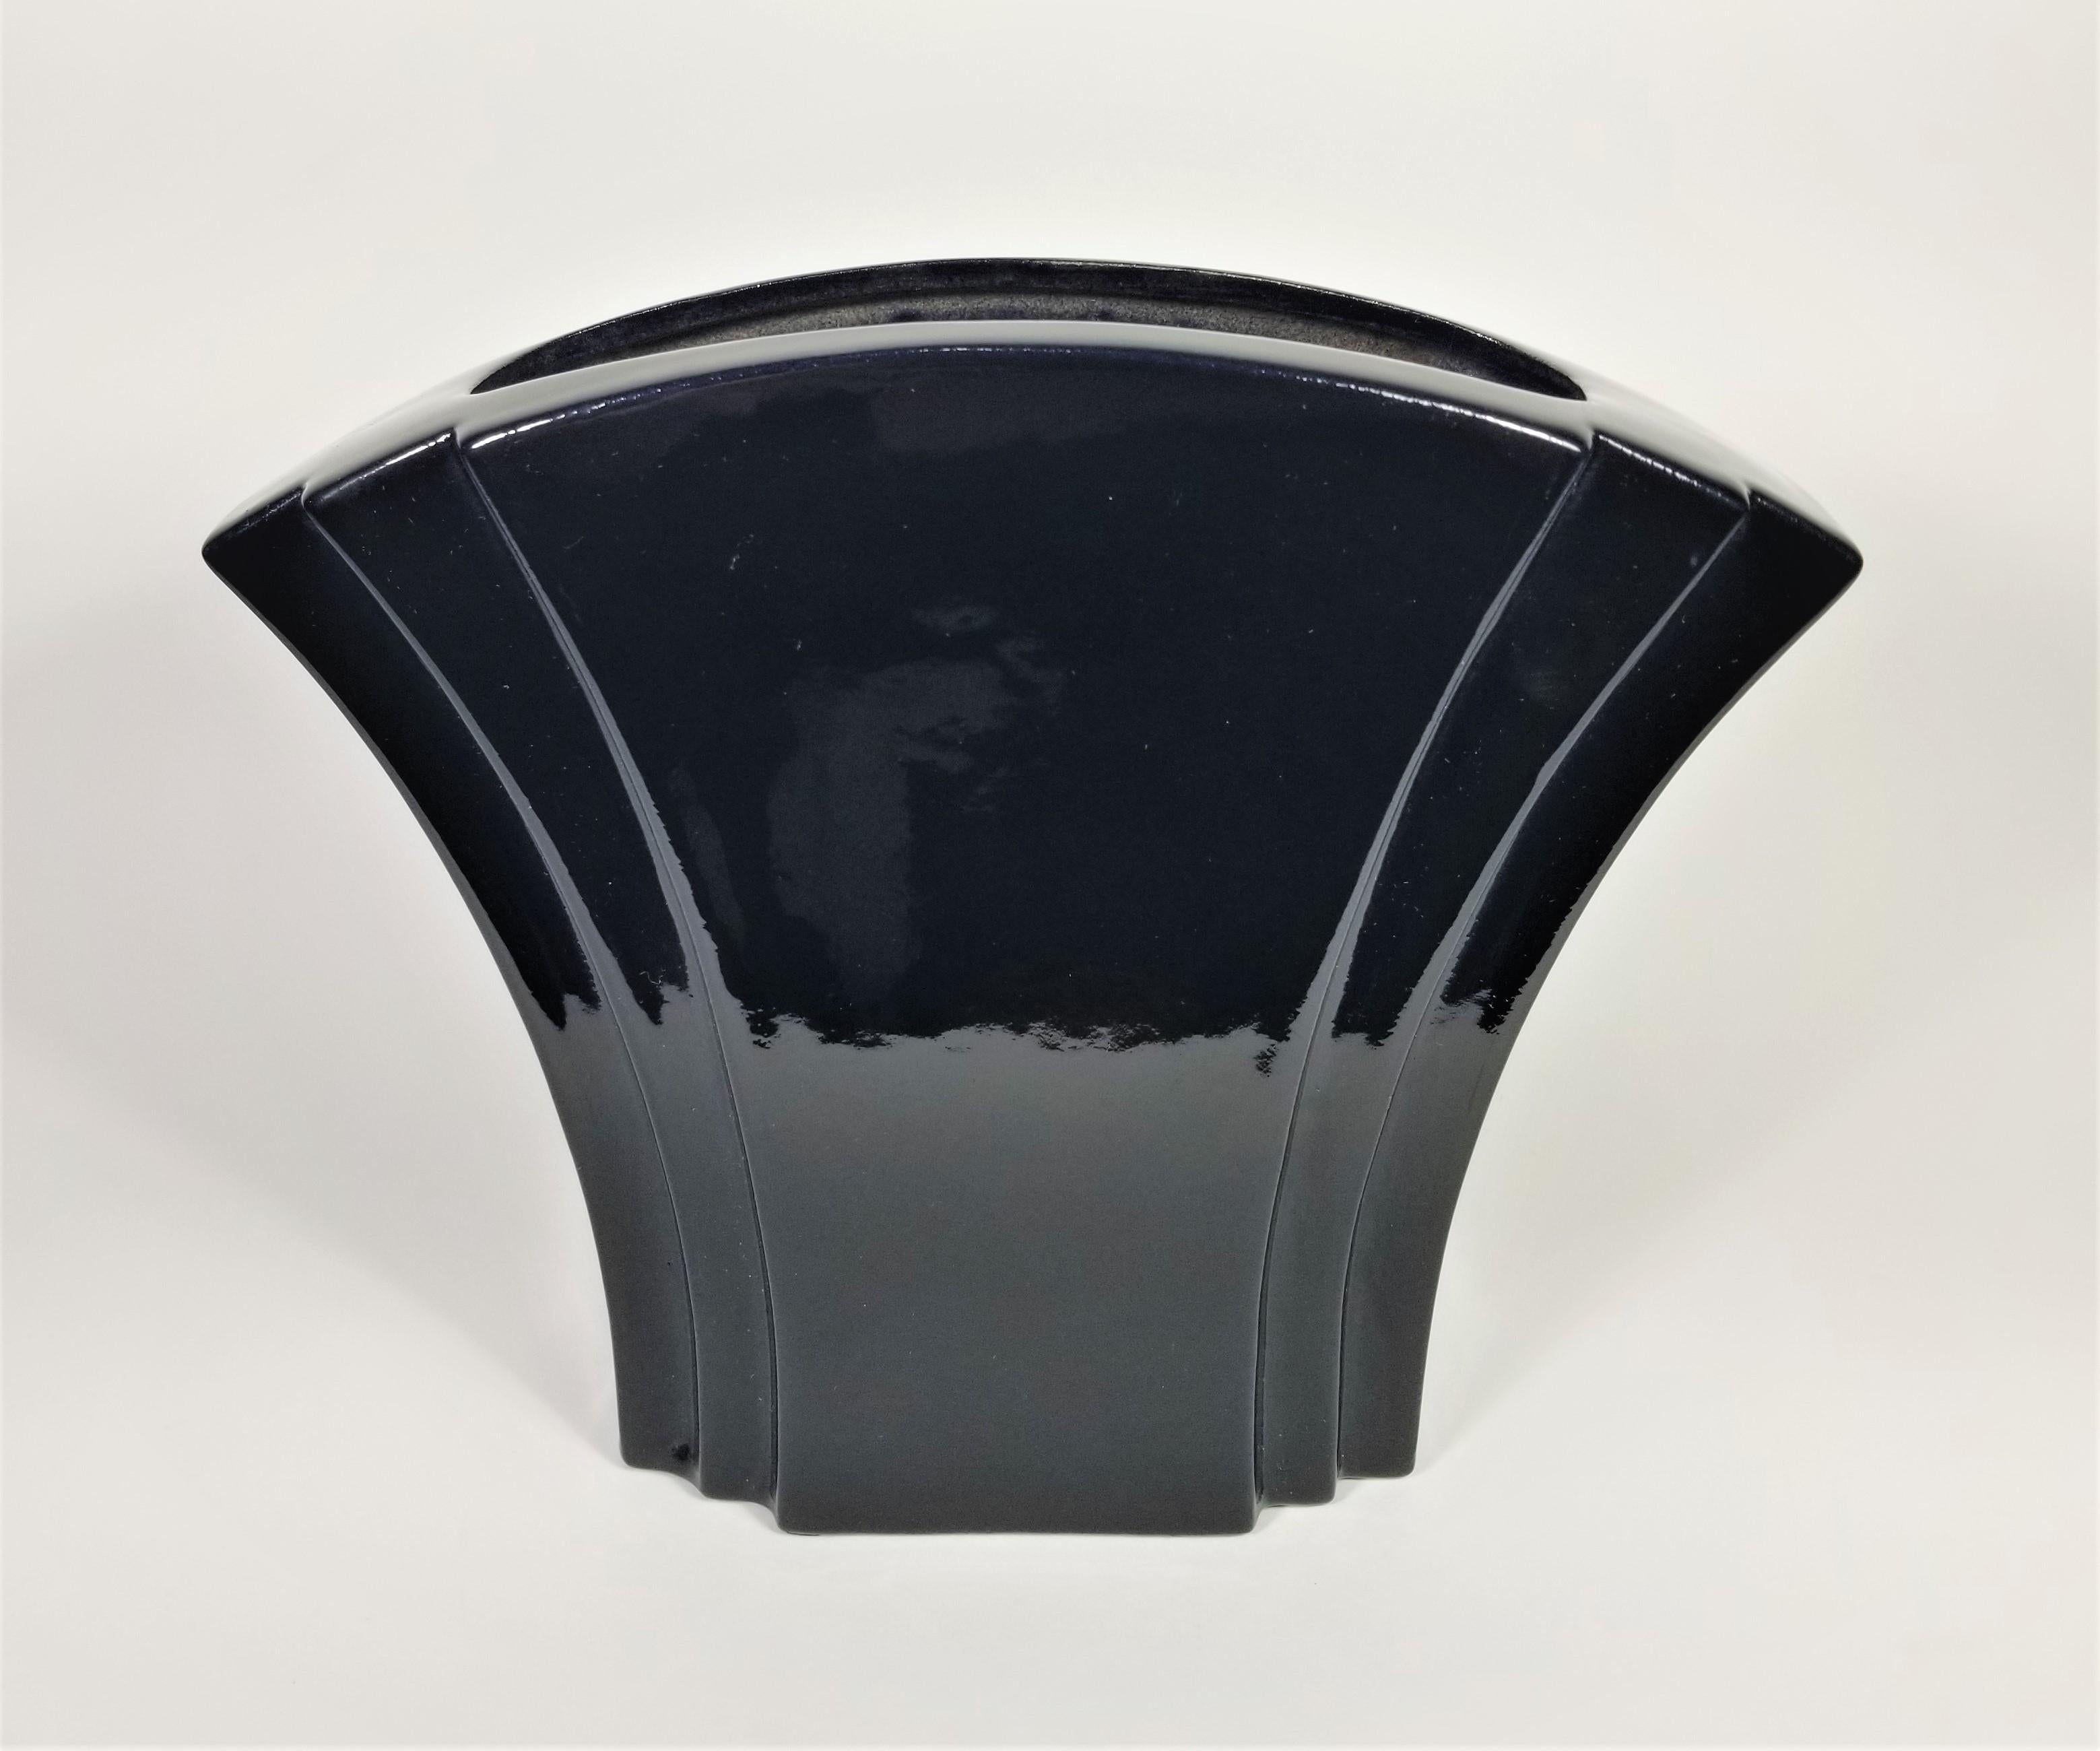 Mid Century 1970s 1980s Black Glazed Ceramic Vase by Hyalyn. Art Deco Design. Signed on Bottom. 